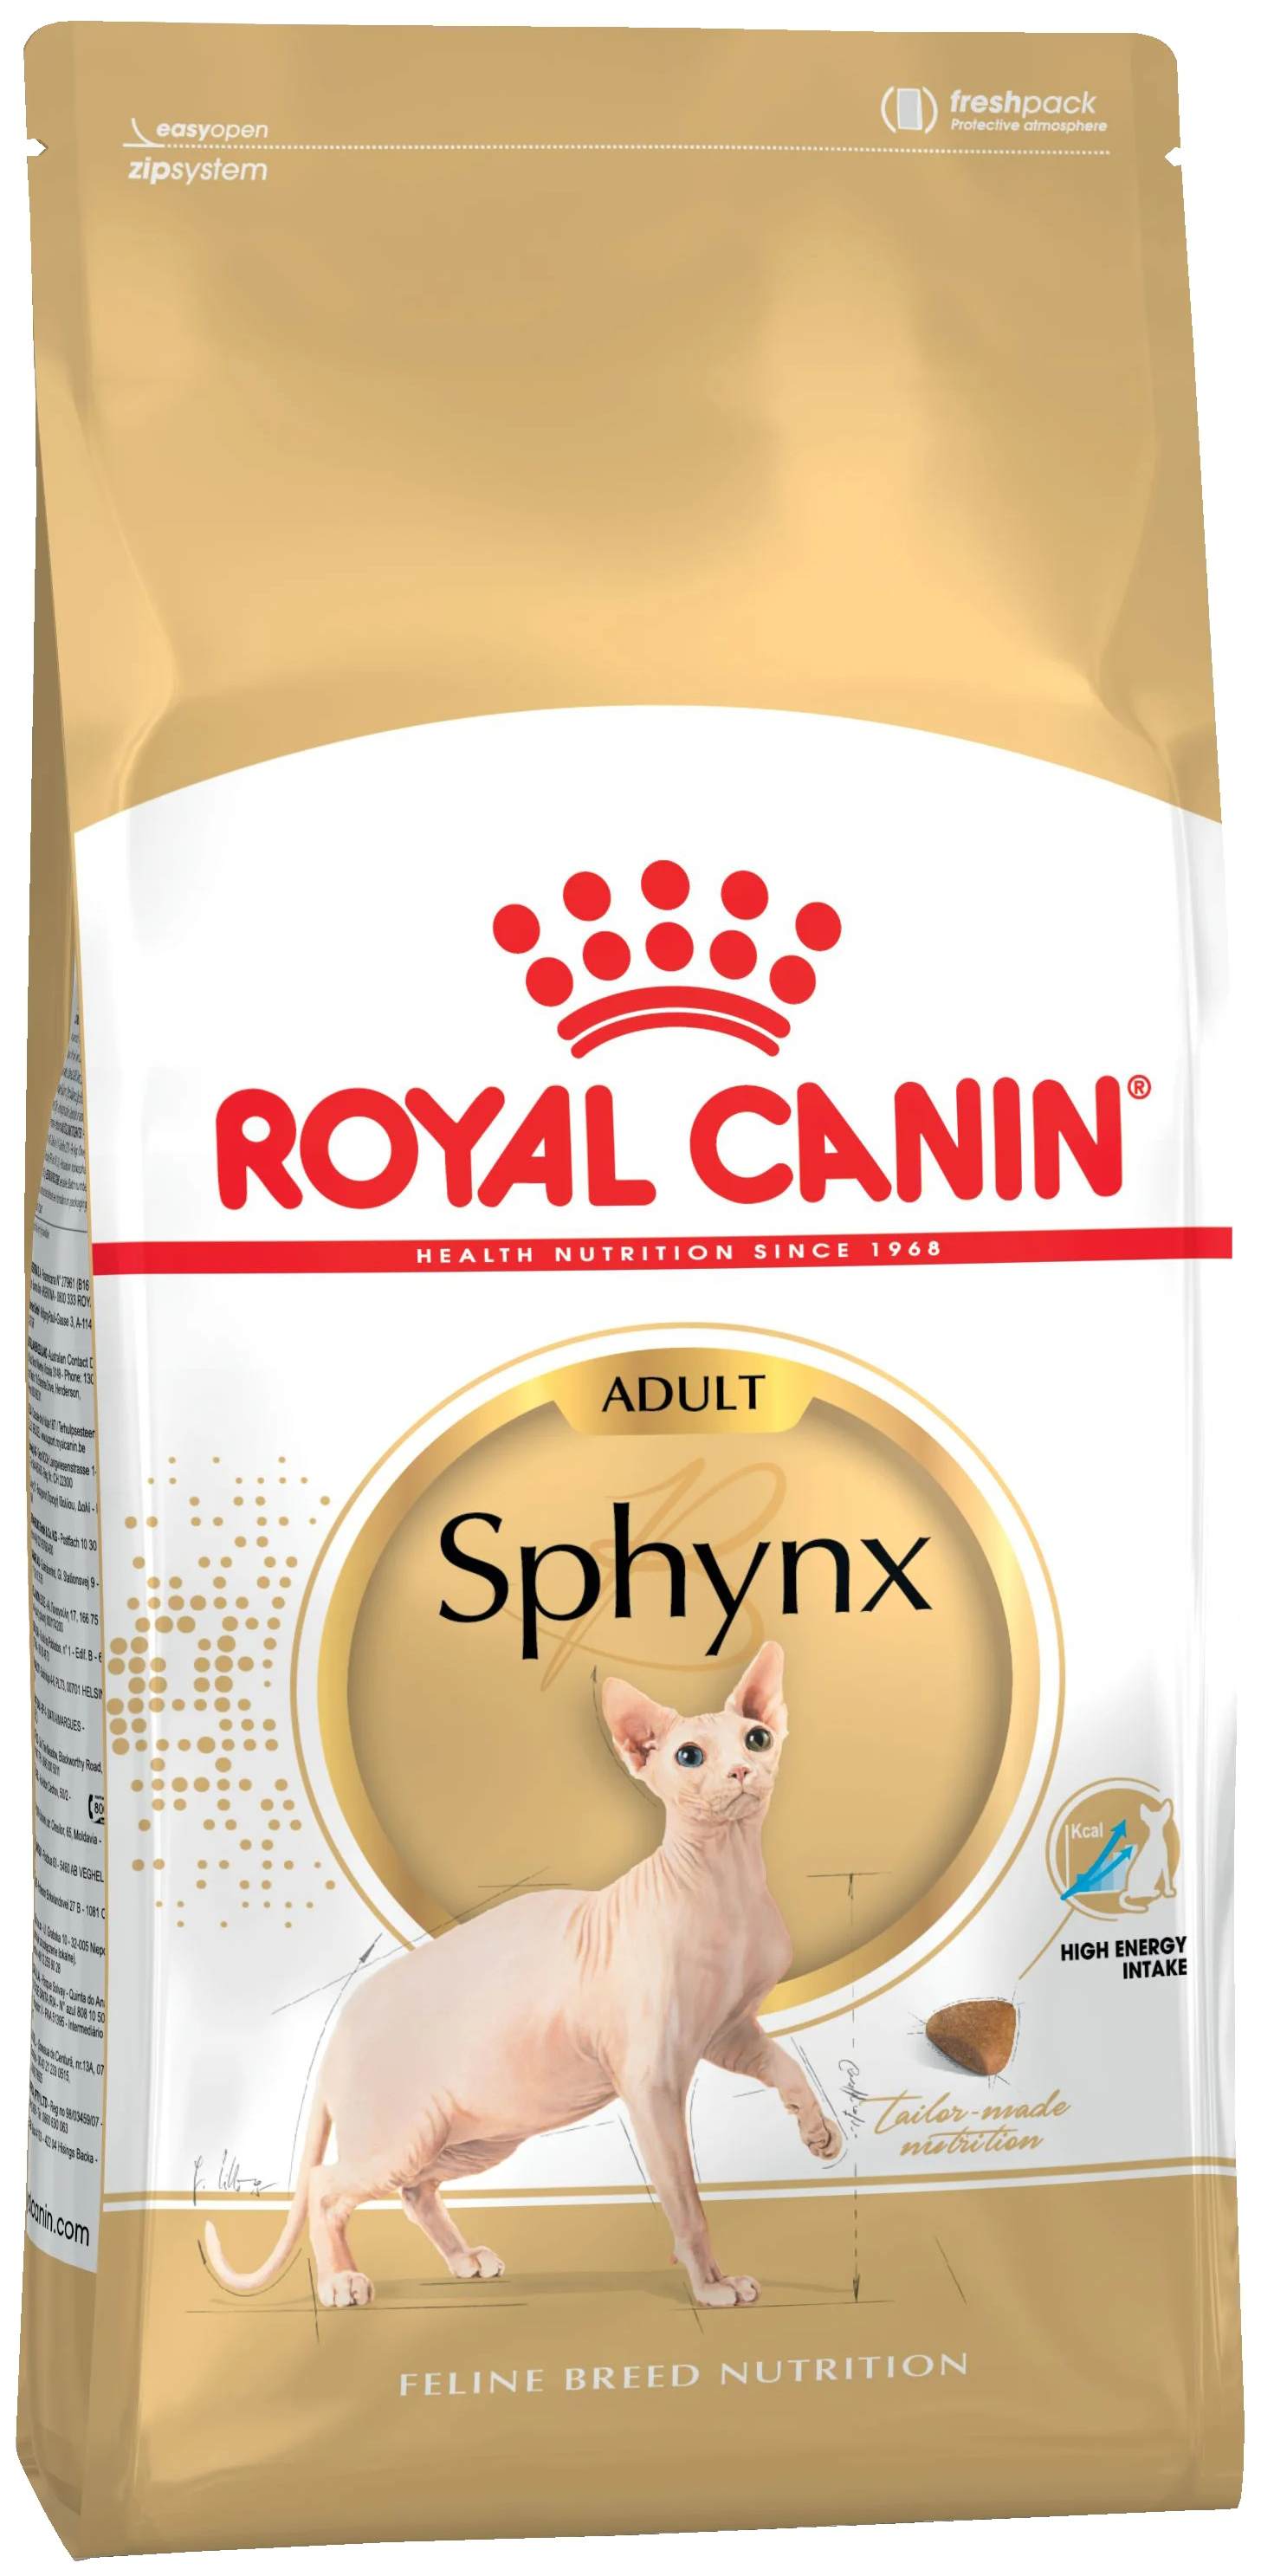 фото Сухой корм для кошек royal canin sphynx adult для взрослых сфинксов, 12шт по 0,4 кг